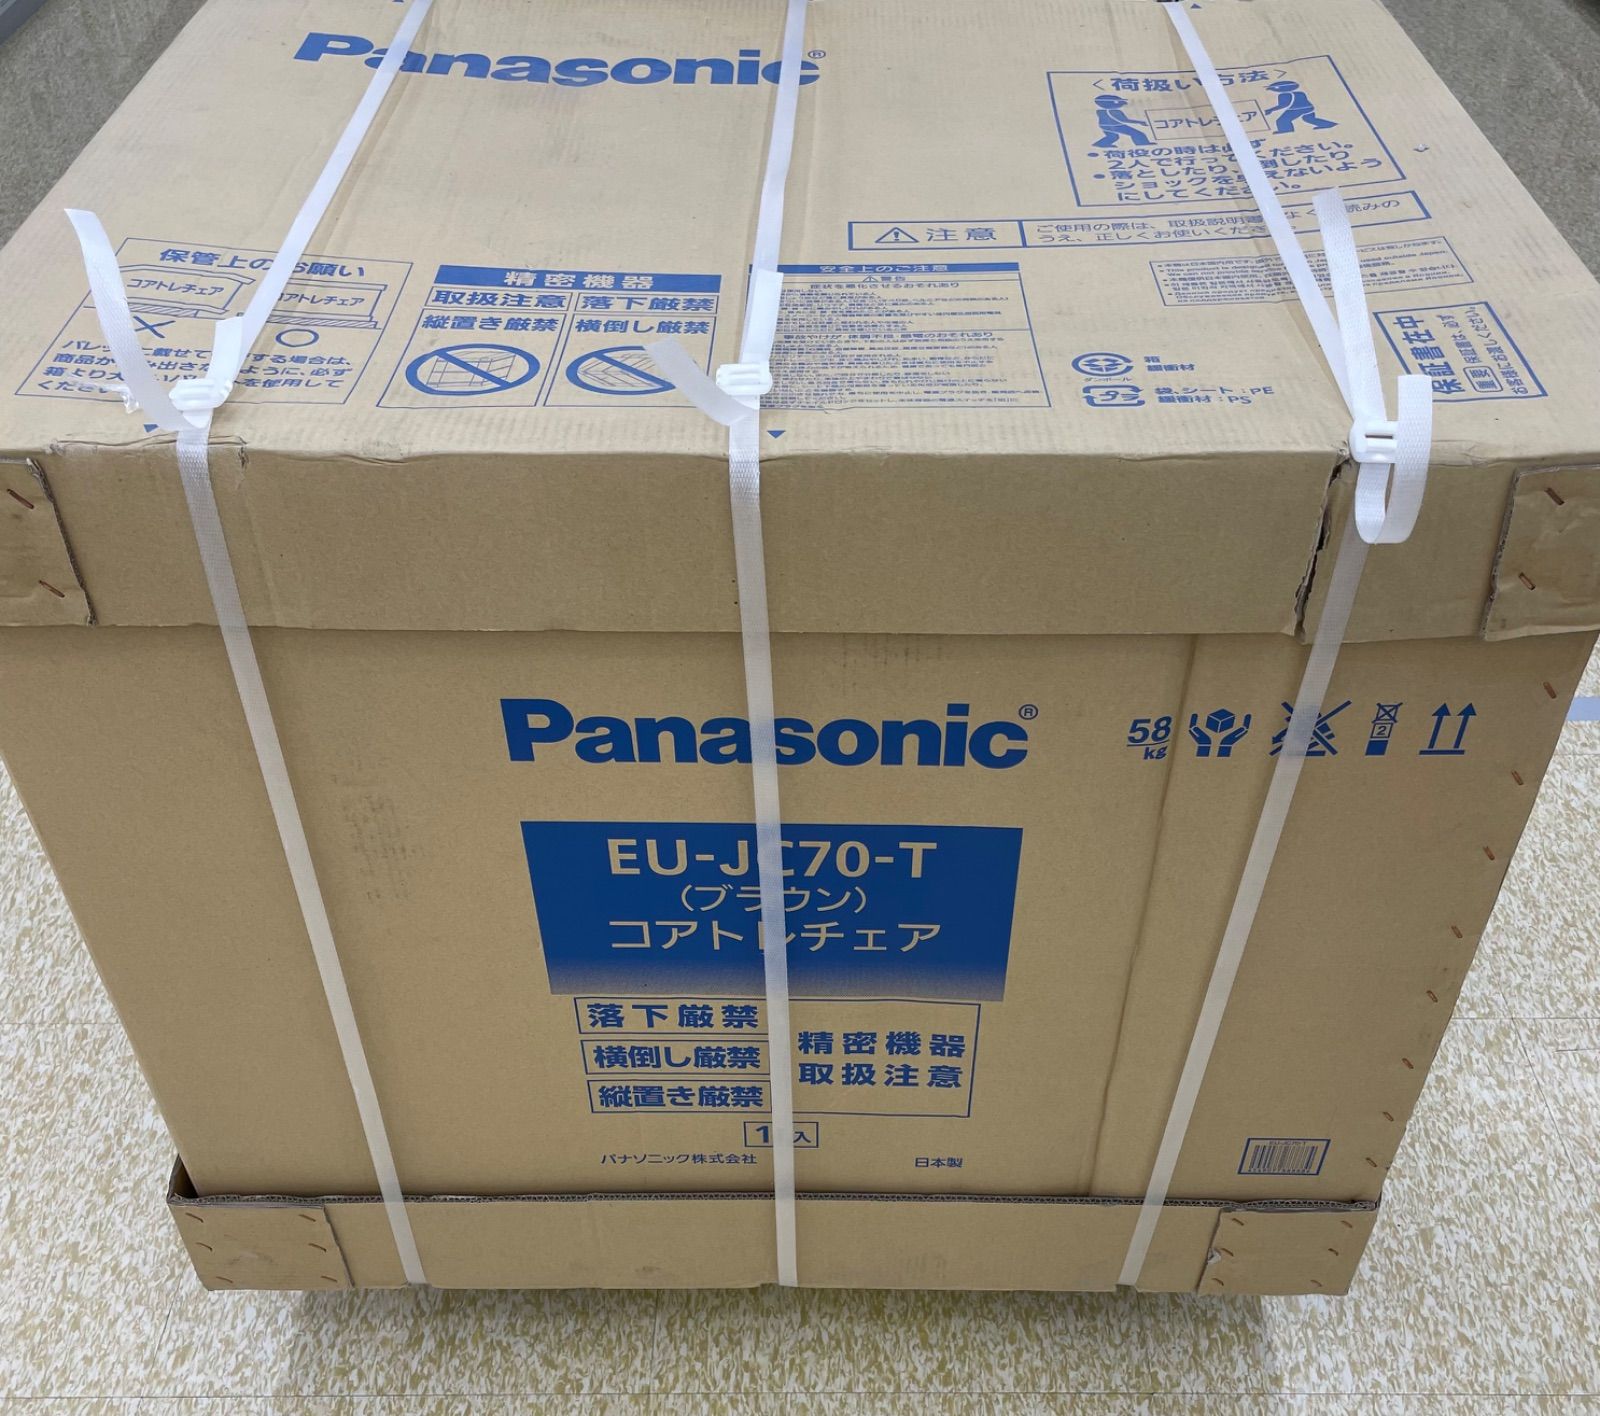 Panasonic コアトレチェア EU-JC70-T ブラウン色 | agb.md